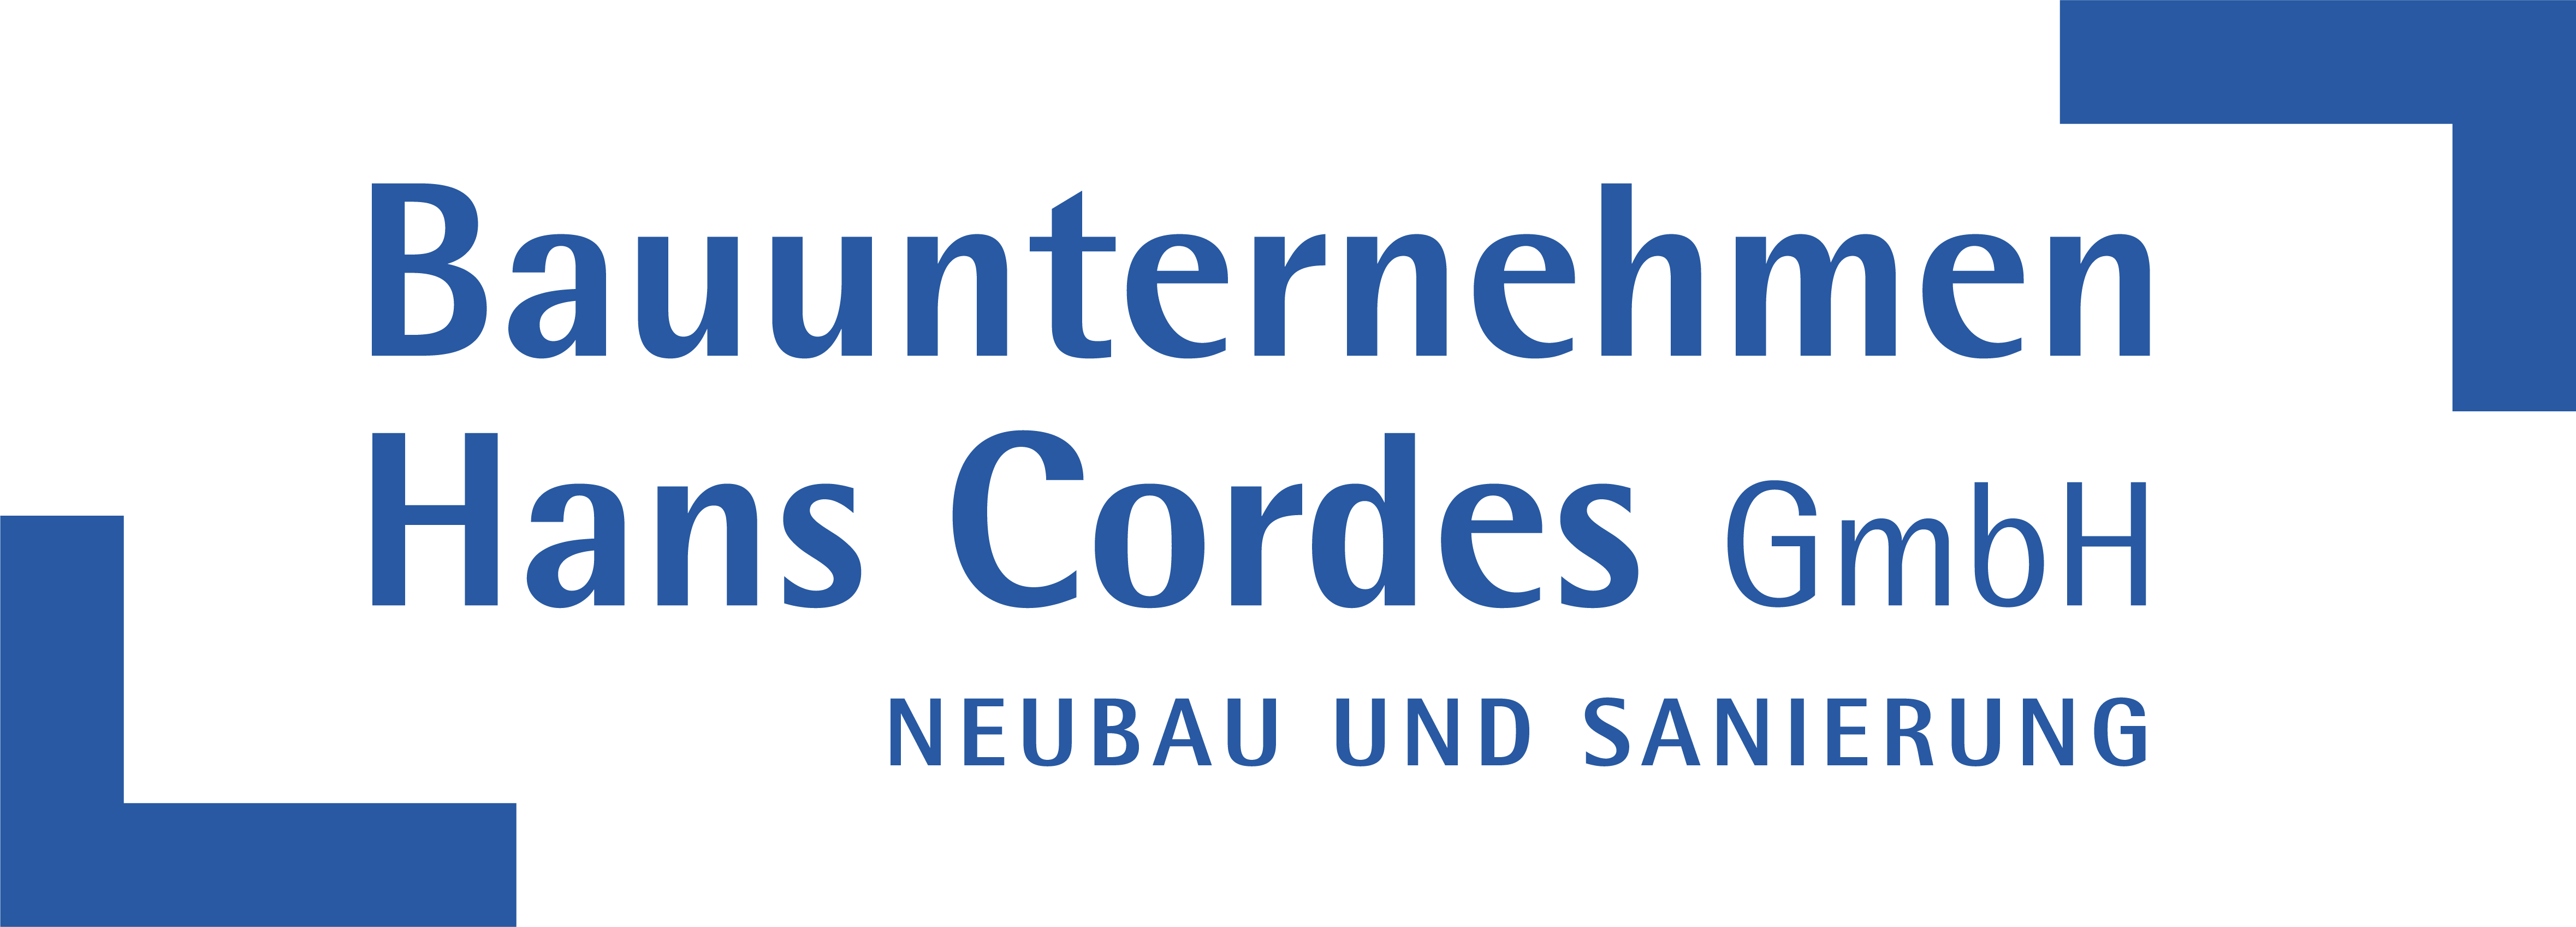 Bauunternehmen Hans Cordes GmbH